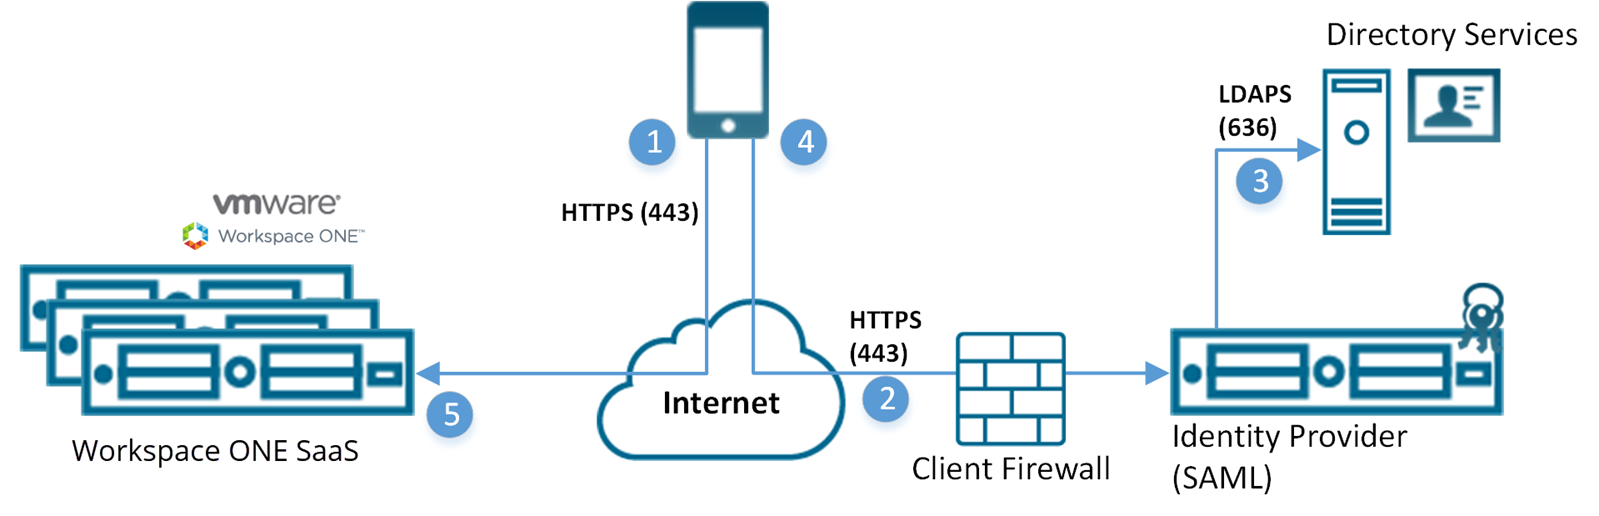 Este diagrama mostra o servidor Workspace ONE SaaS recebendo entrada de um dispositivo pela Internet e acessando o provedor de identidade SAML por meio de um firewall.